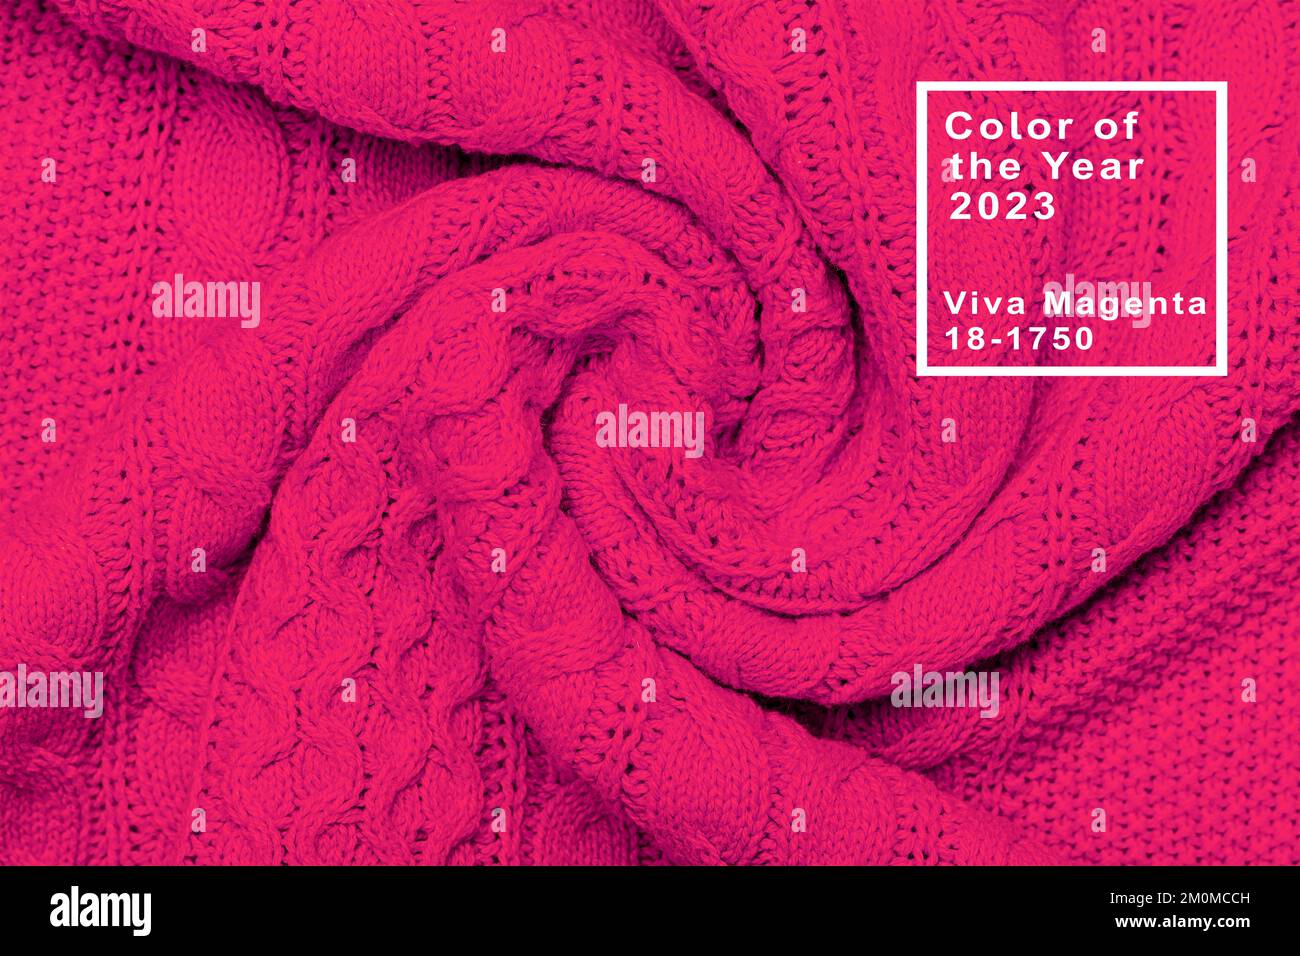 Die Konsistenz eines warmen Strickpulvers. Wunderschönes, handgestricktes, sich wiederholendes Muster. Darstellung der Pantone-Farbe des Jahres 2023 viva magenta. Stockfoto